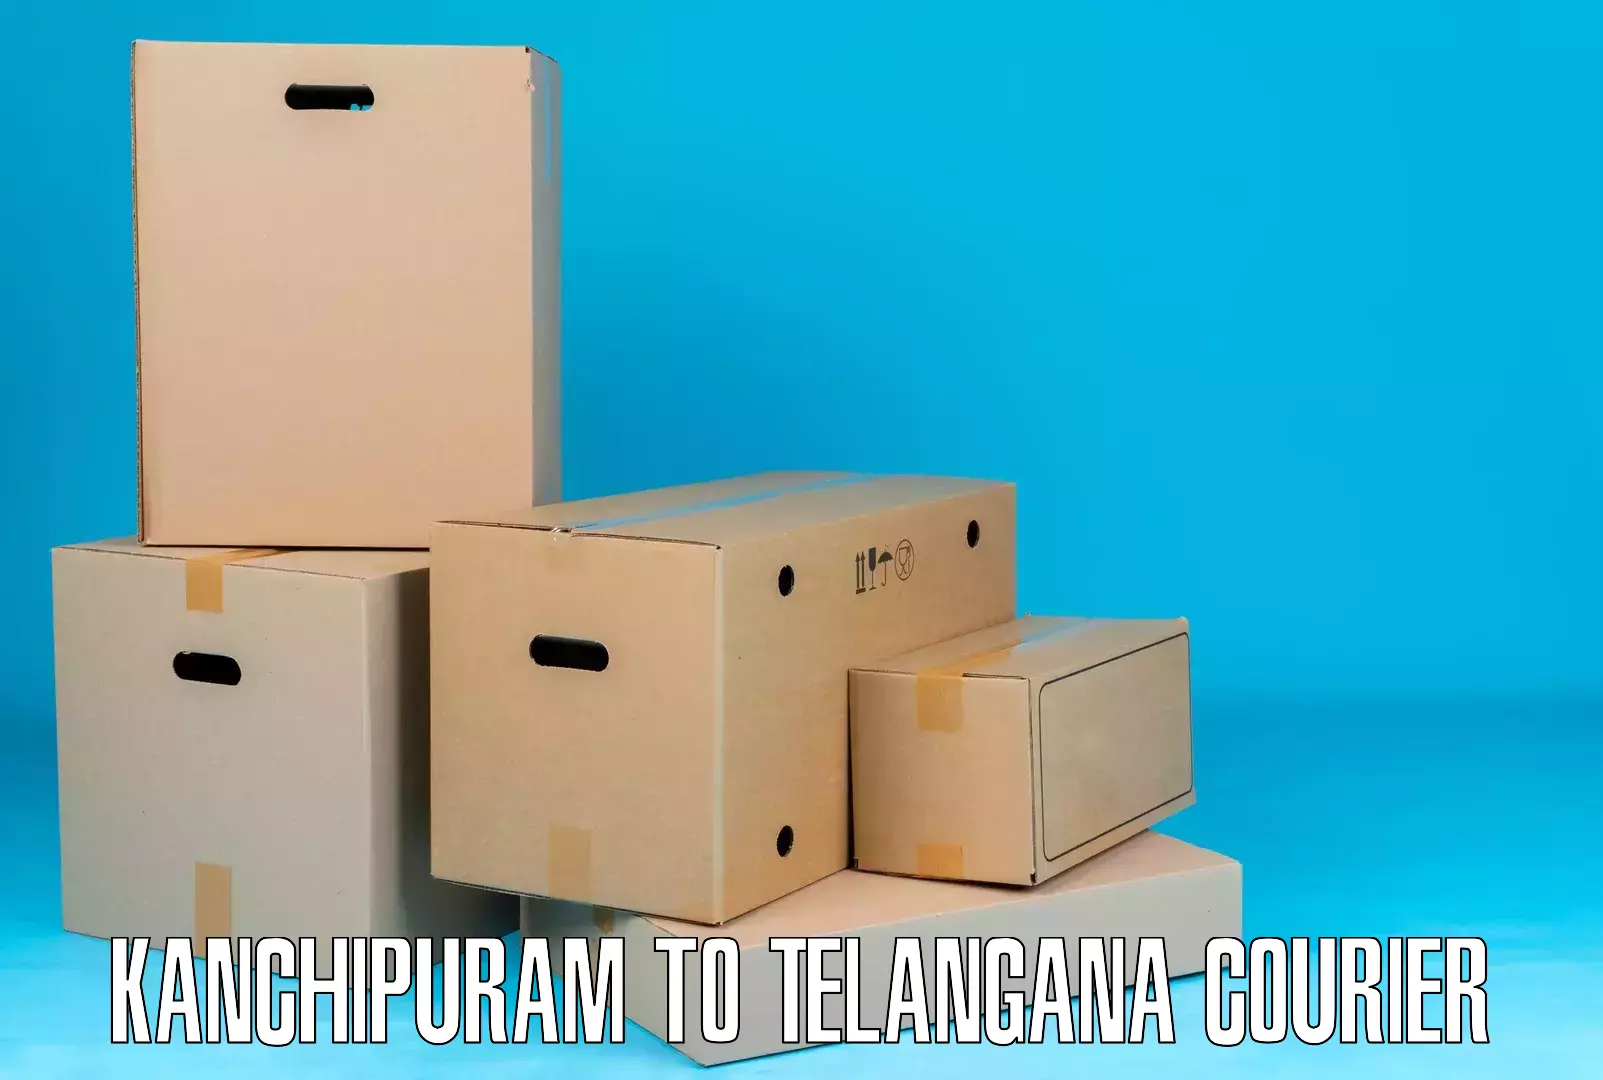 Full-service courier options Kanchipuram to Devarakonda